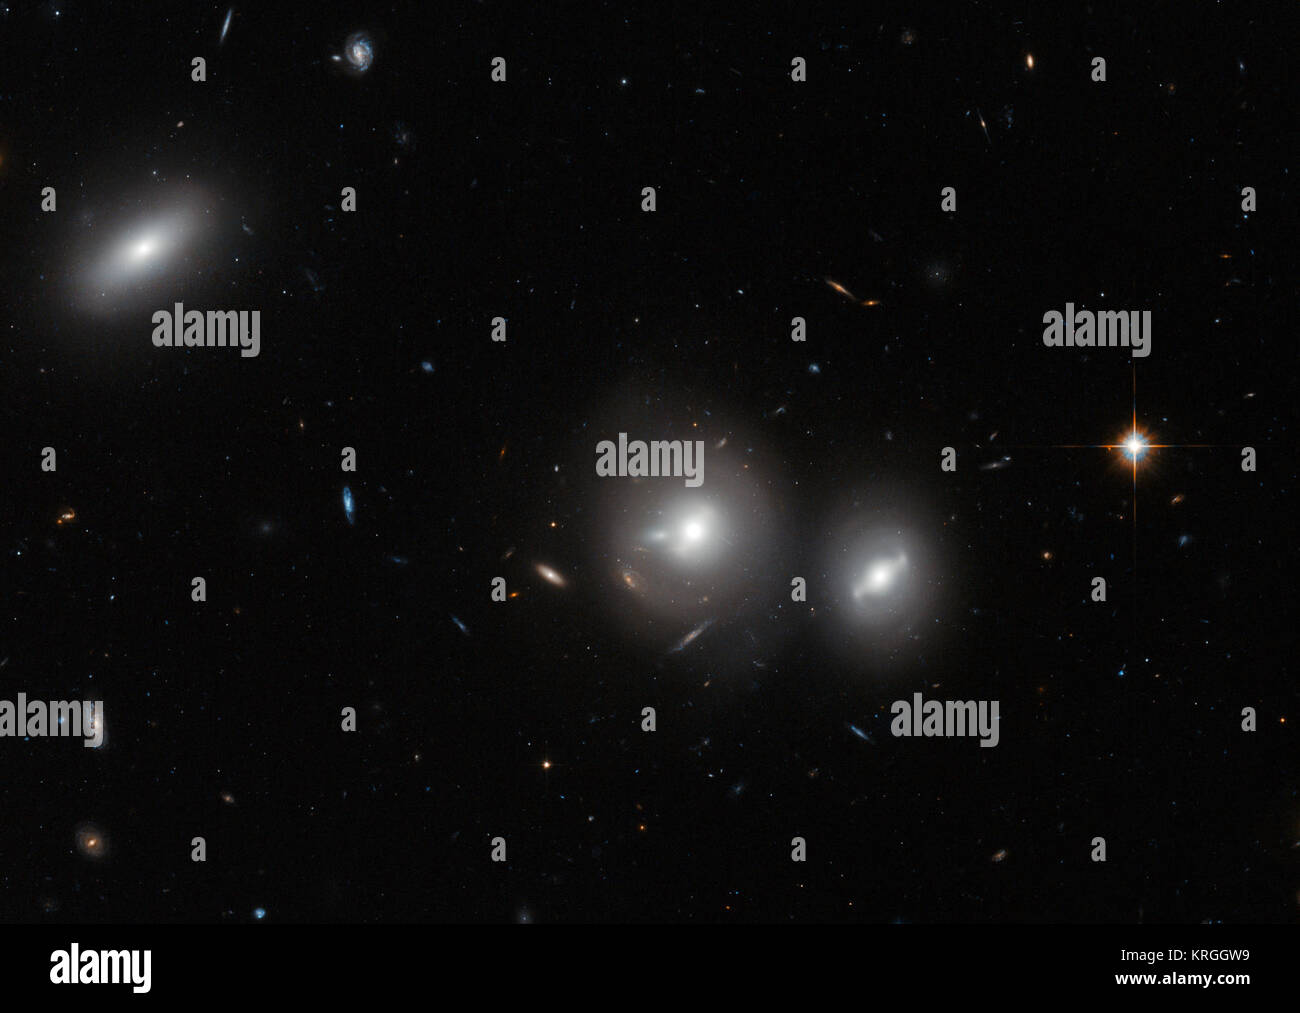 In dieses neue Bild Hubble späht in die Coma Cluster, eine massive Ansammlung von Galaxien in Richtung Sternbild Coma Berenices befindet. Dieses große Cluster ist rund 350 Millionen Lichtjahre von uns entfernt und enthält über 1000 Galaxien identifiziert, von denen die meisten elliptisch. Die hellen, Untertasse - geformte Objekte von misty Halos in diesem Bild umgeben sind Galaxien, jeder von ihnen viele Millionen von Sternen. Der Hintergrund des Bildes ist voll von weit entfernten Galaxien, viele von ihnen mit spiraligen Formen, die sind viel weiter entfernt und nicht zum Cluster gehören. In diesem Bild sichtbar Stockfoto